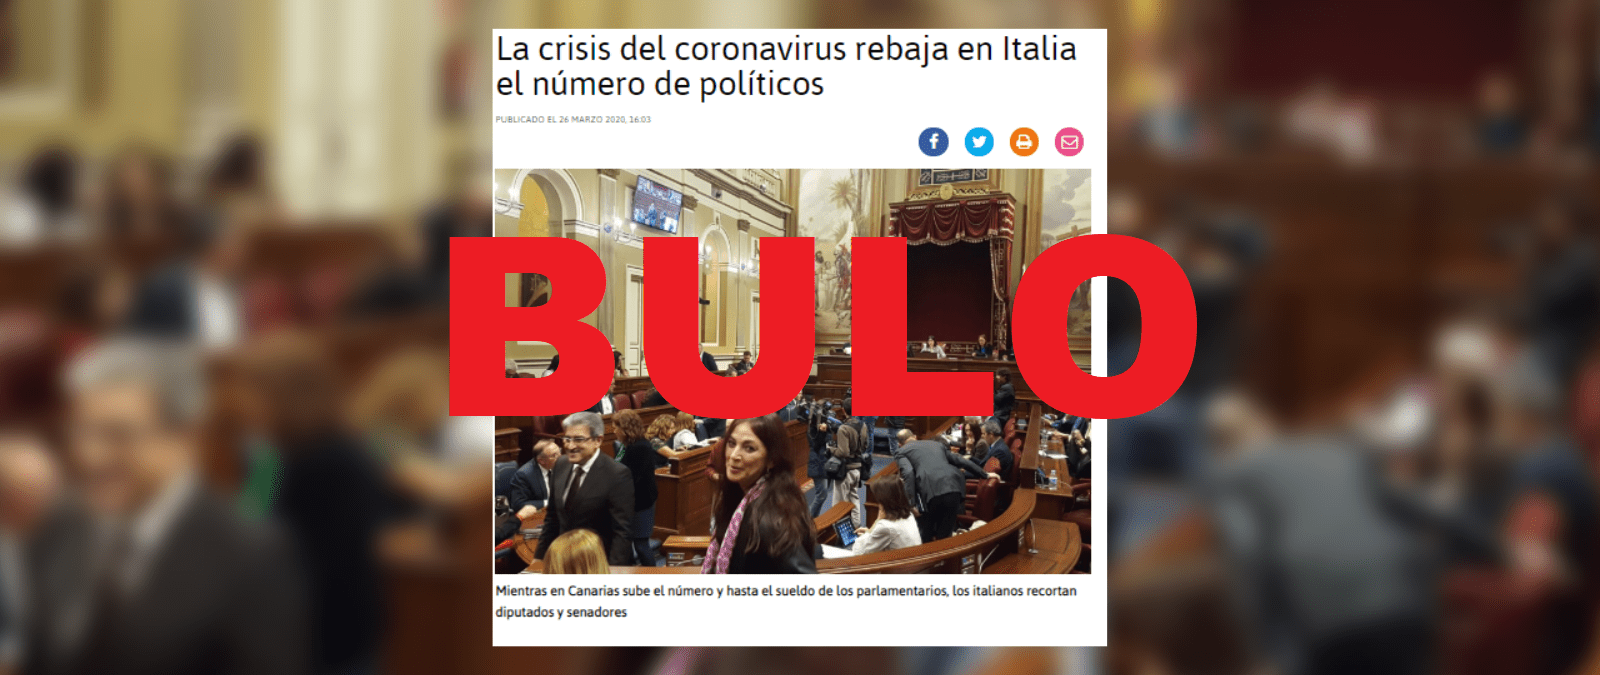 No, l’Italia non sta riducendo il numero dei politici a causa della “crisi del coronavirus” Maldita.es